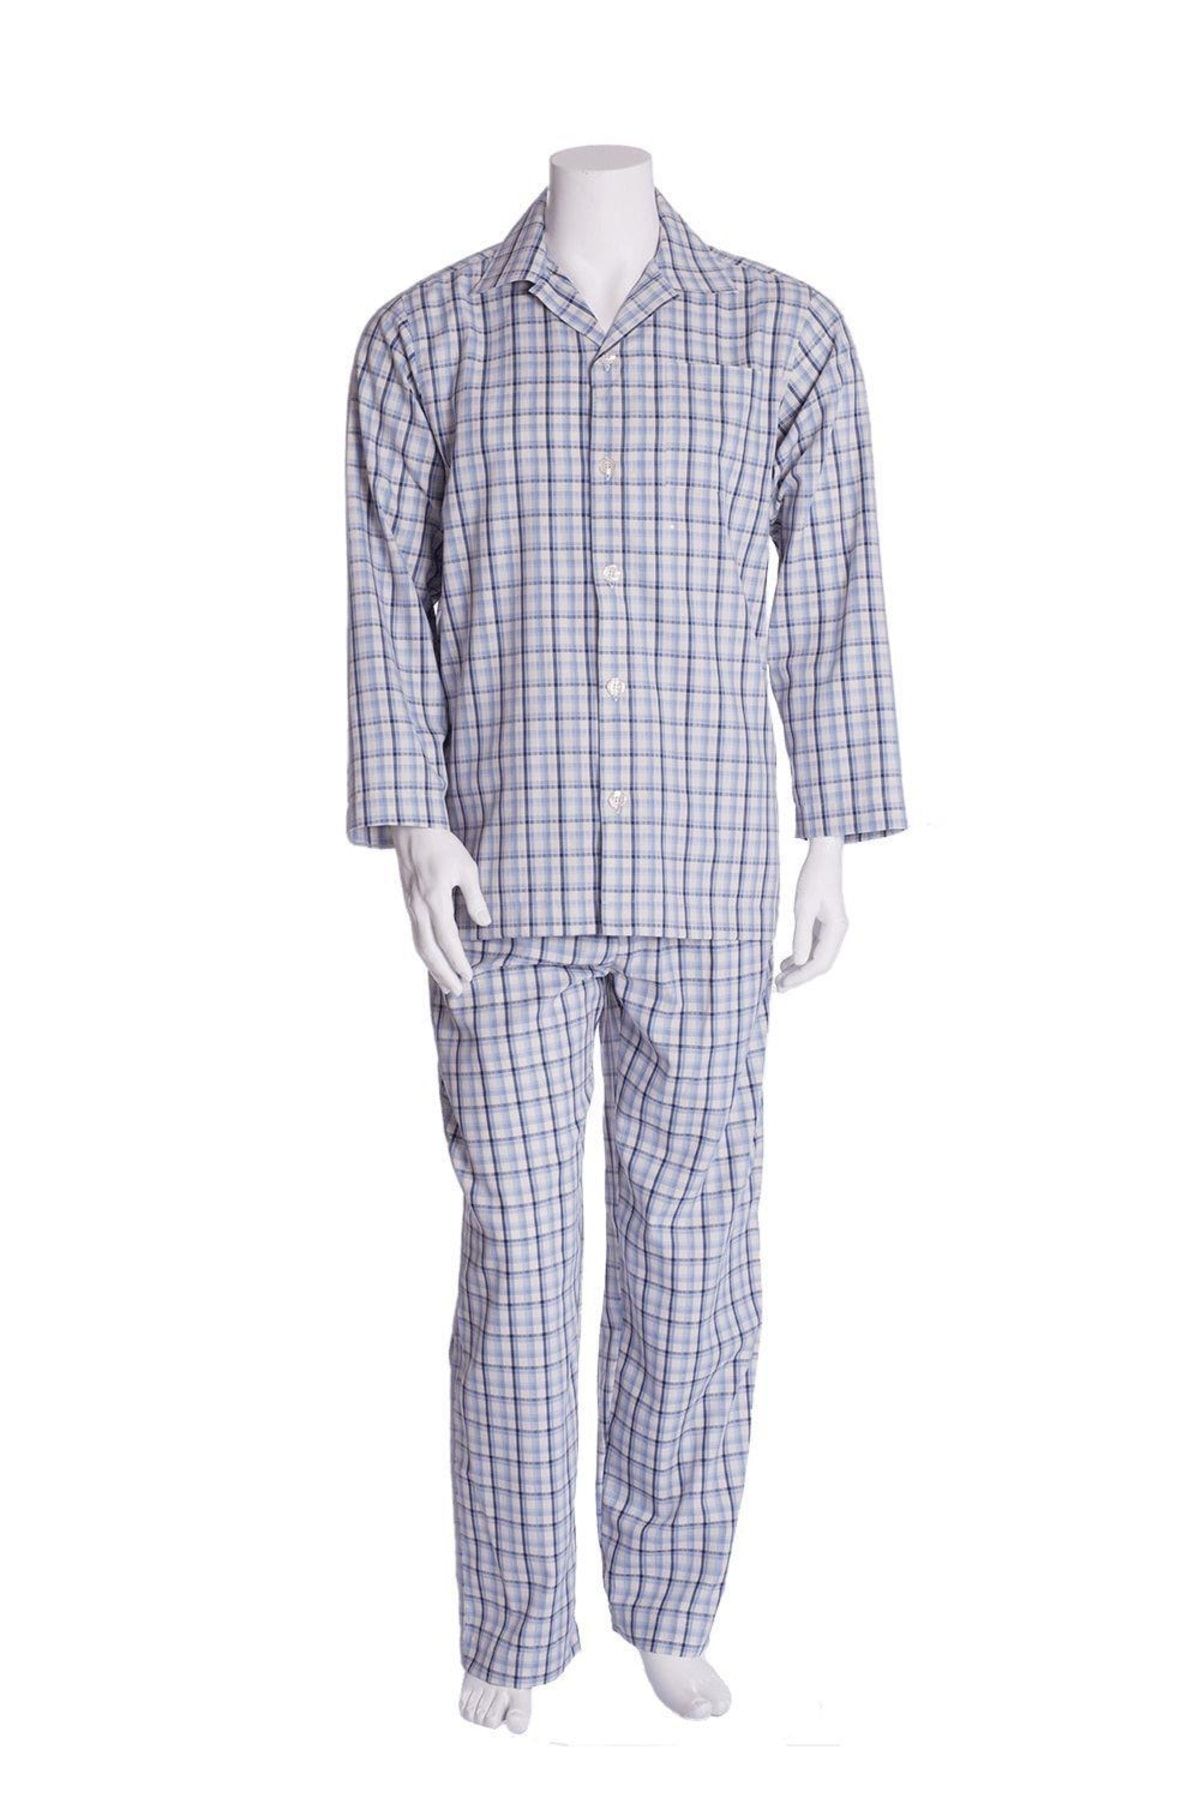 TheDon Erkek Pijama Takımı Desen 22